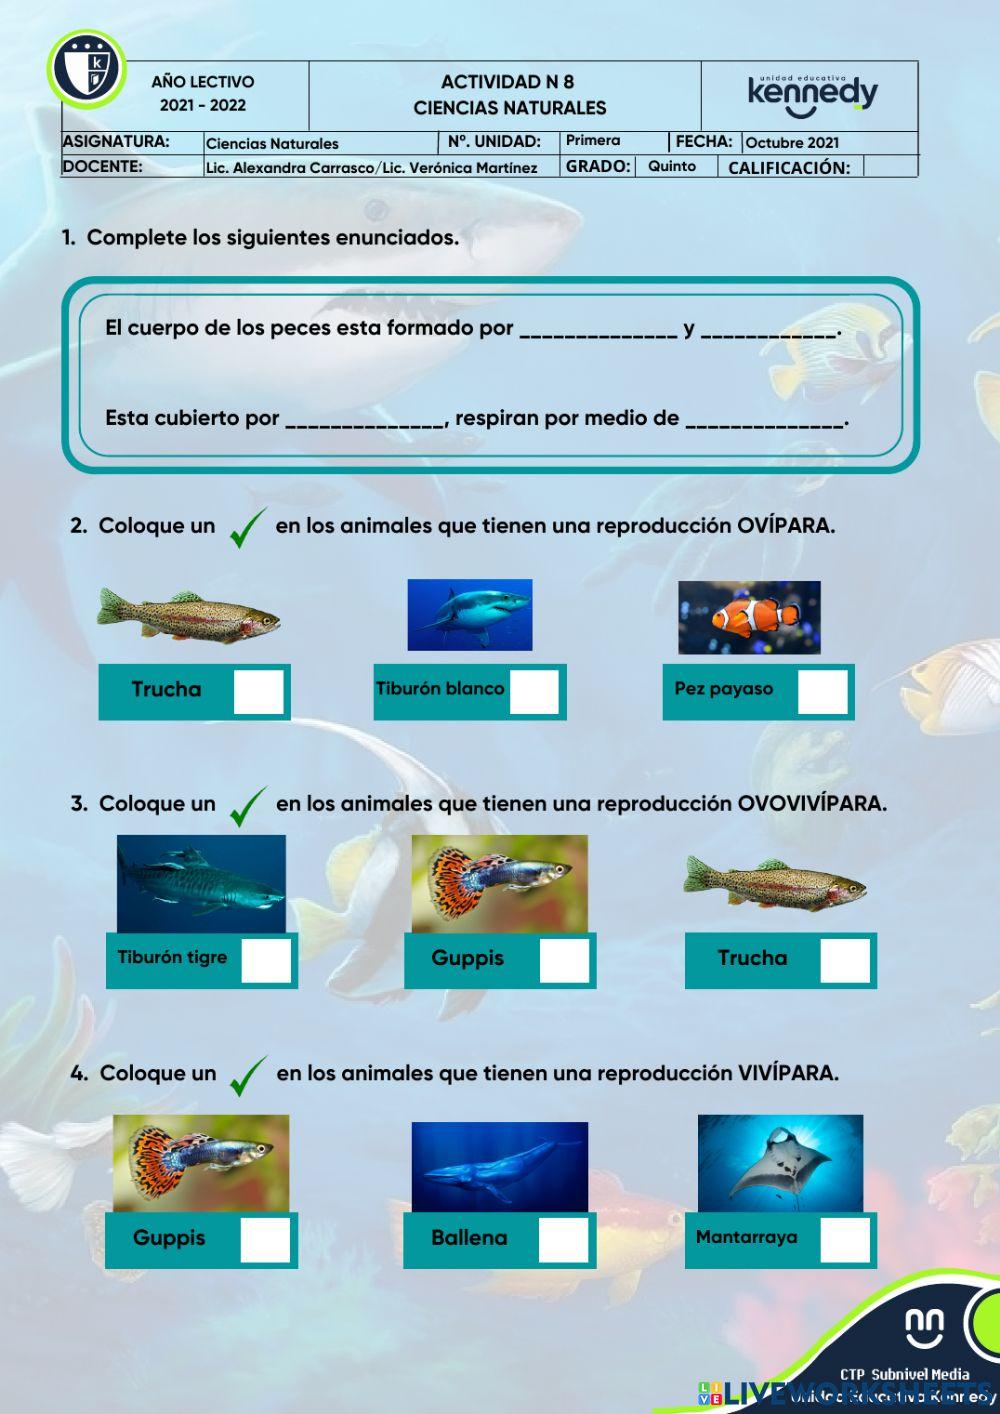 UE KENNEDY - Reproducción de los peces